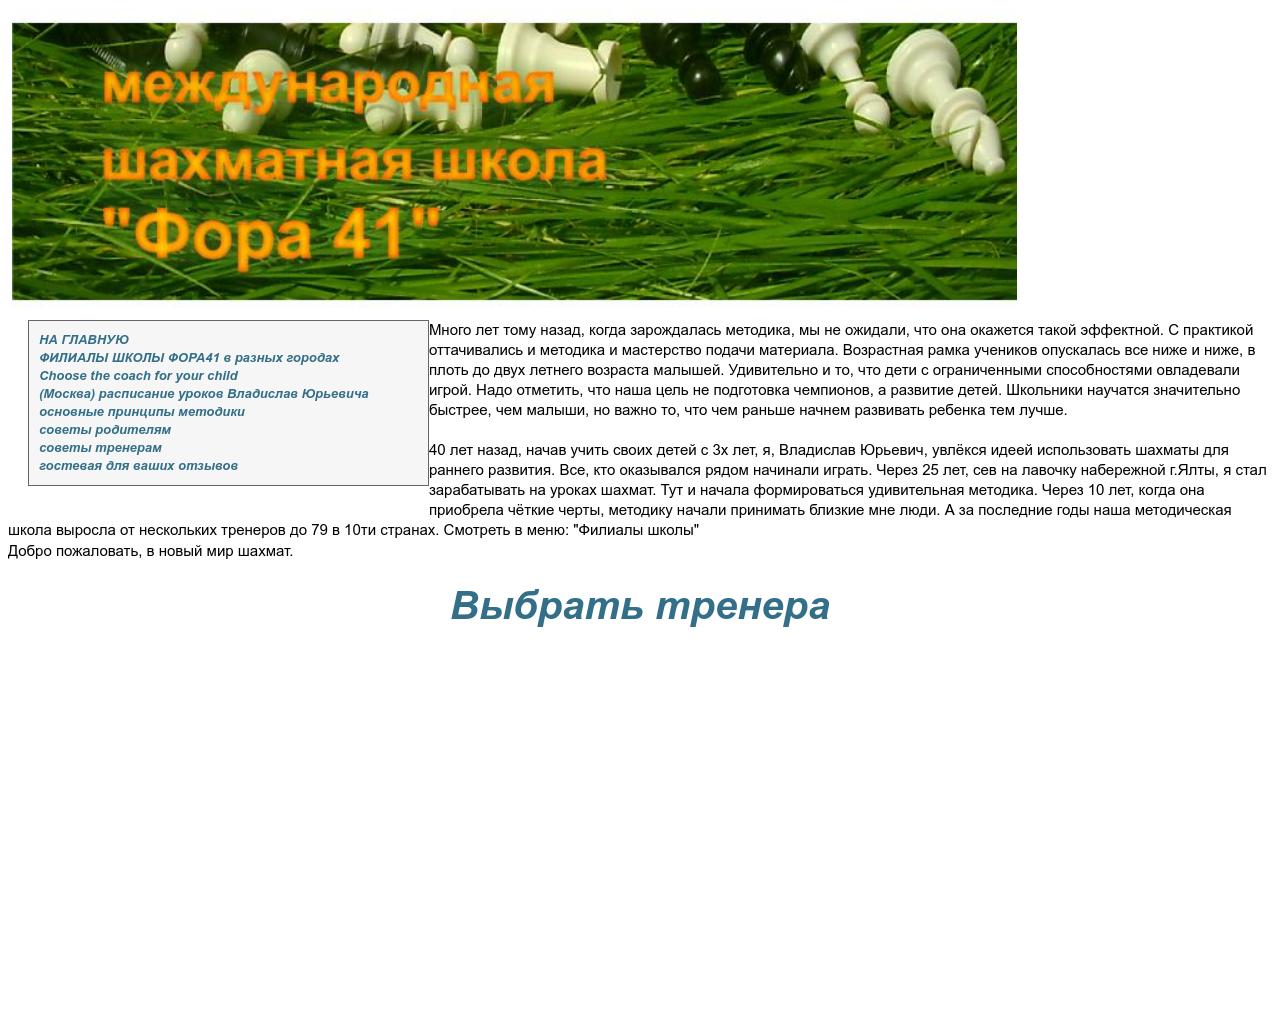 Изображение сайта fora41.ru в разрешении 1280x1024